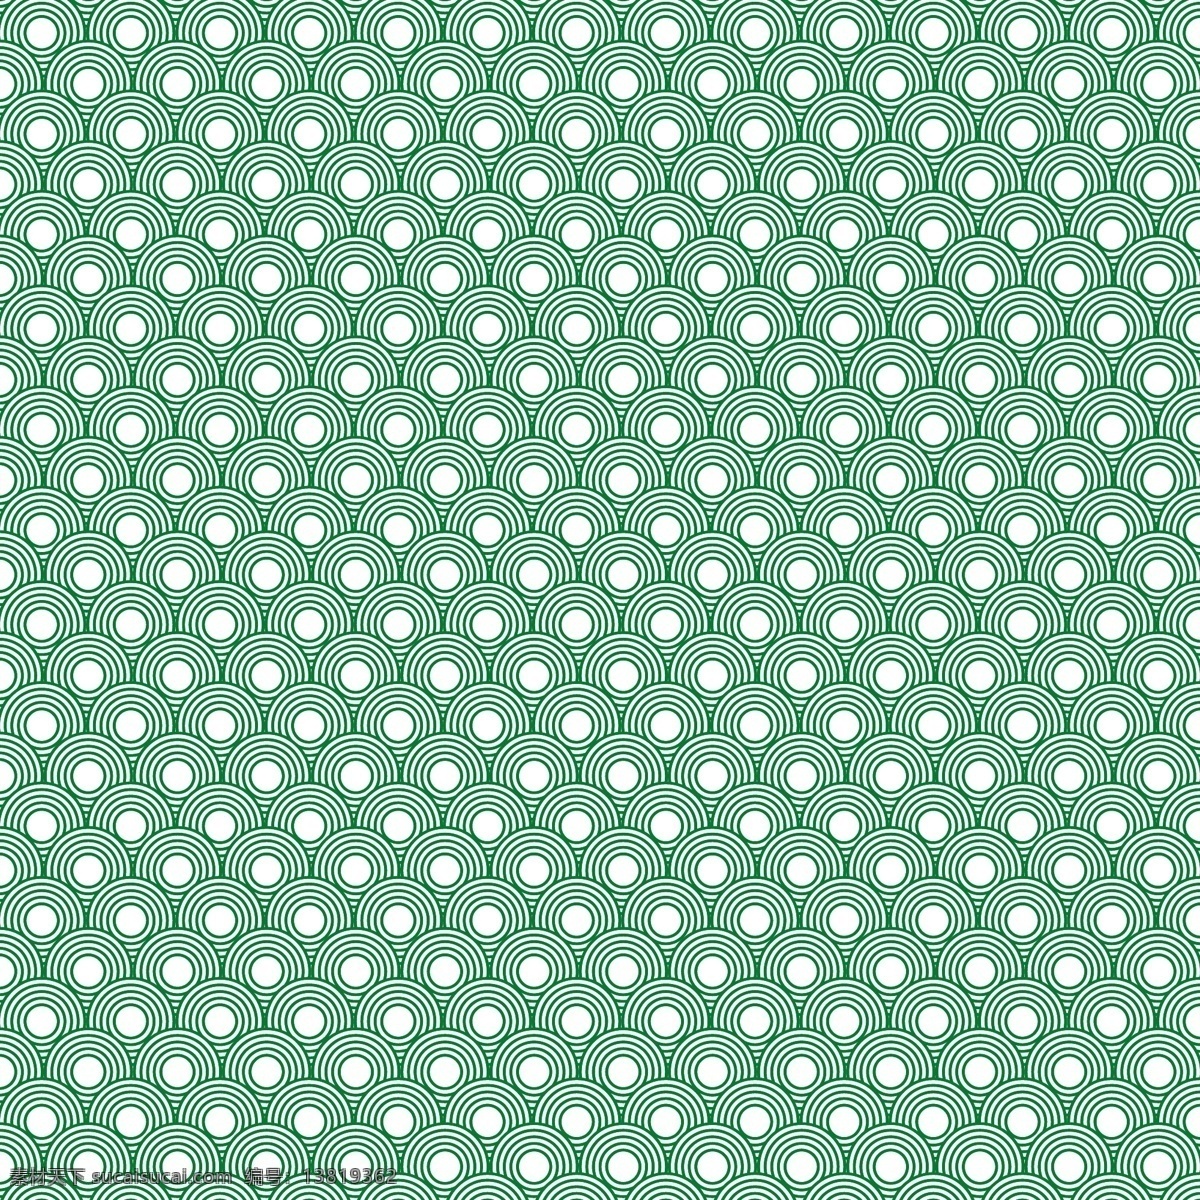 绿色循环模式 背景 模式 抽象 卡 纹理 装饰 几何 时尚 标签 复古 壁纸 中文 图形 墙 标志 中国 织物